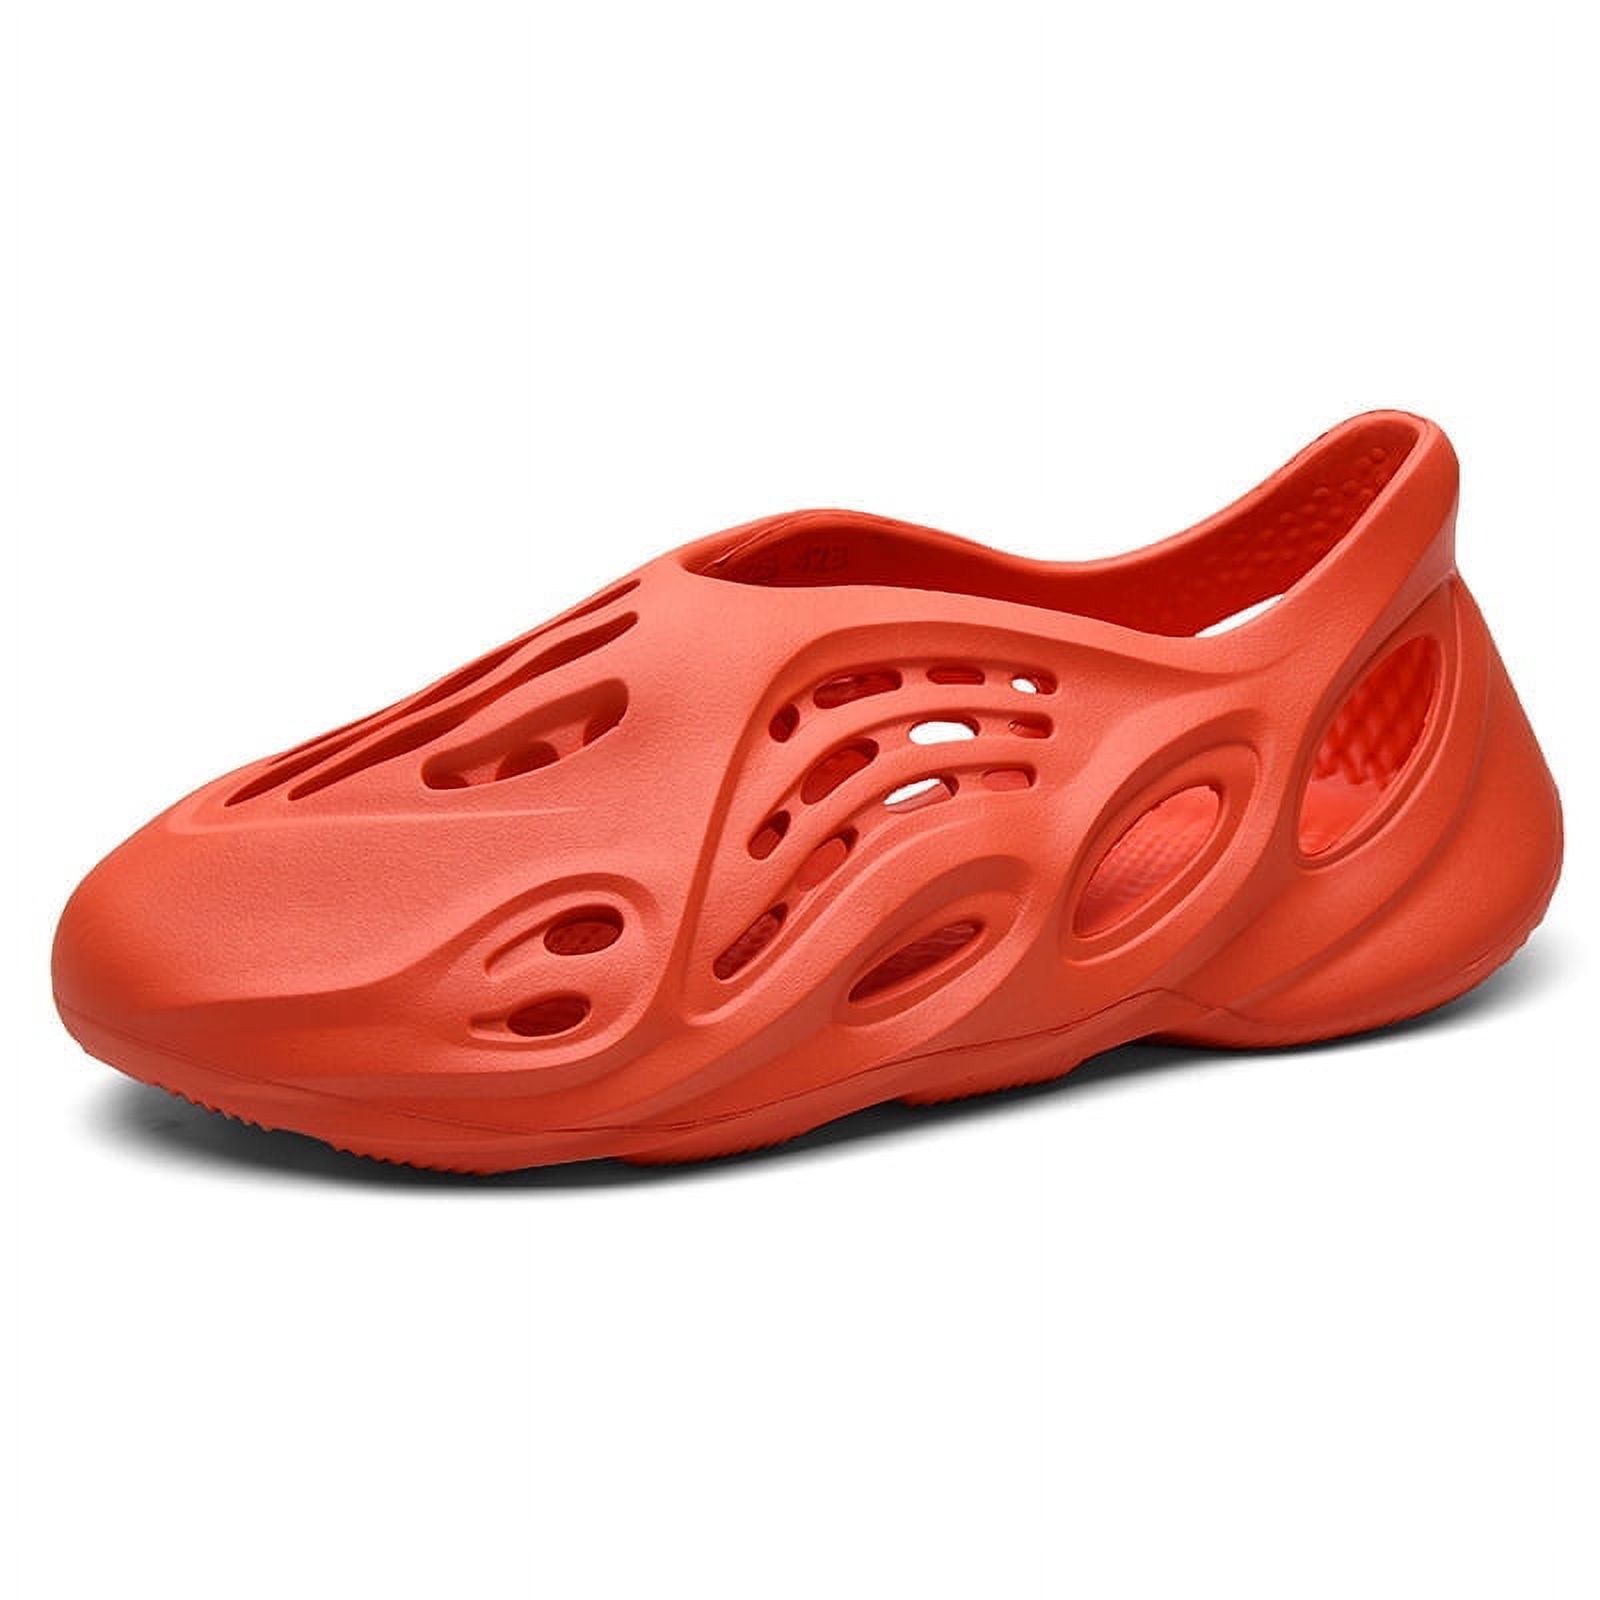 Designer Slippers for Men Woman Slides Foam Runner Comfortable EVA Sandals Sliders Vermillion Flax Glow Green Soot Onyx Black Bone Resin Desert Sand Sulfur - image 2 of 5